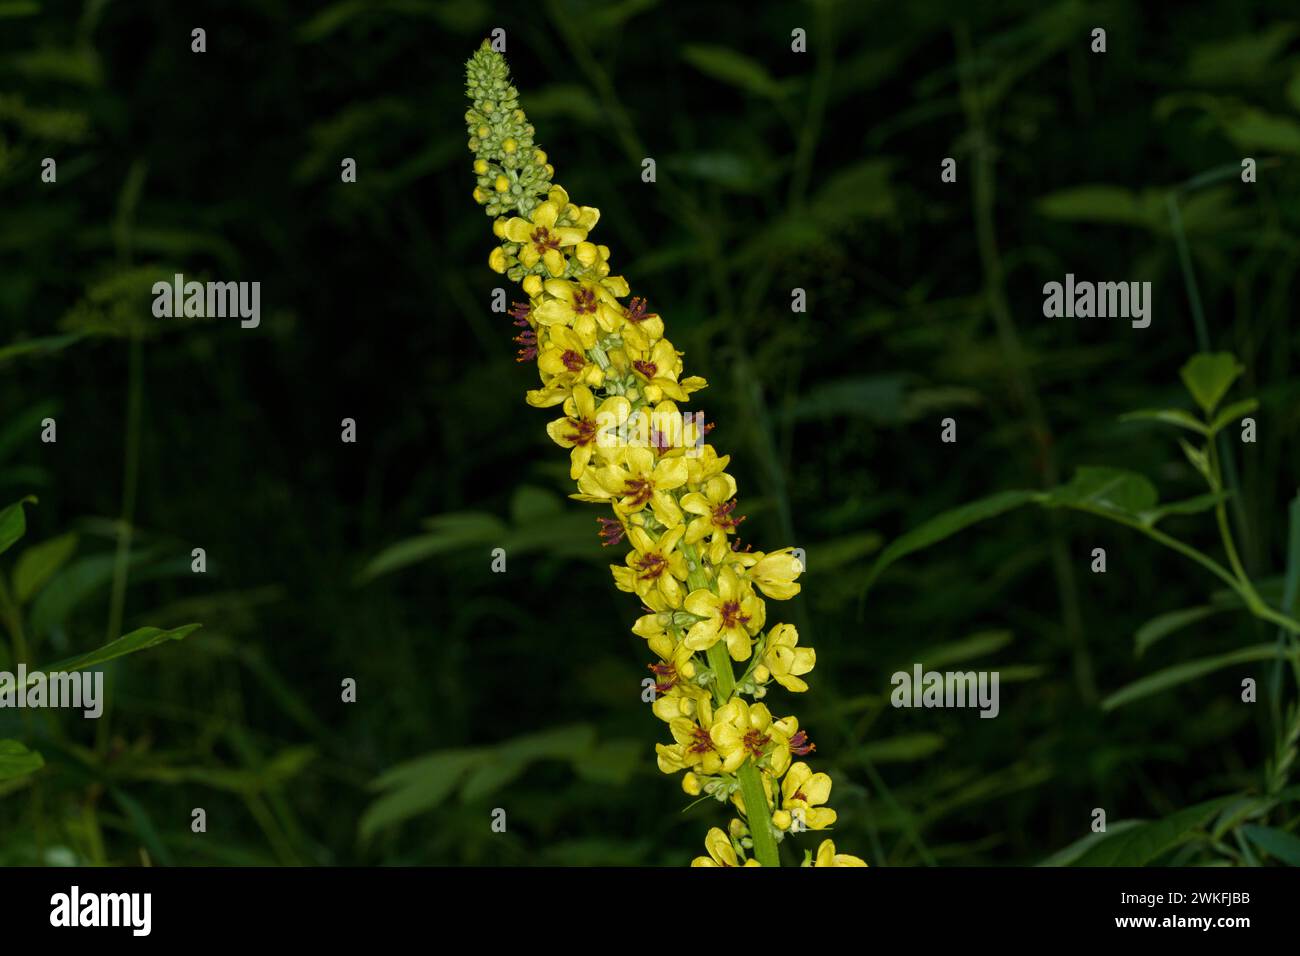 Verbascum nigrum Family Scrophulariaceae Genus Verbascum Dark mullein Black mullein yellow wild flower Stock Photo